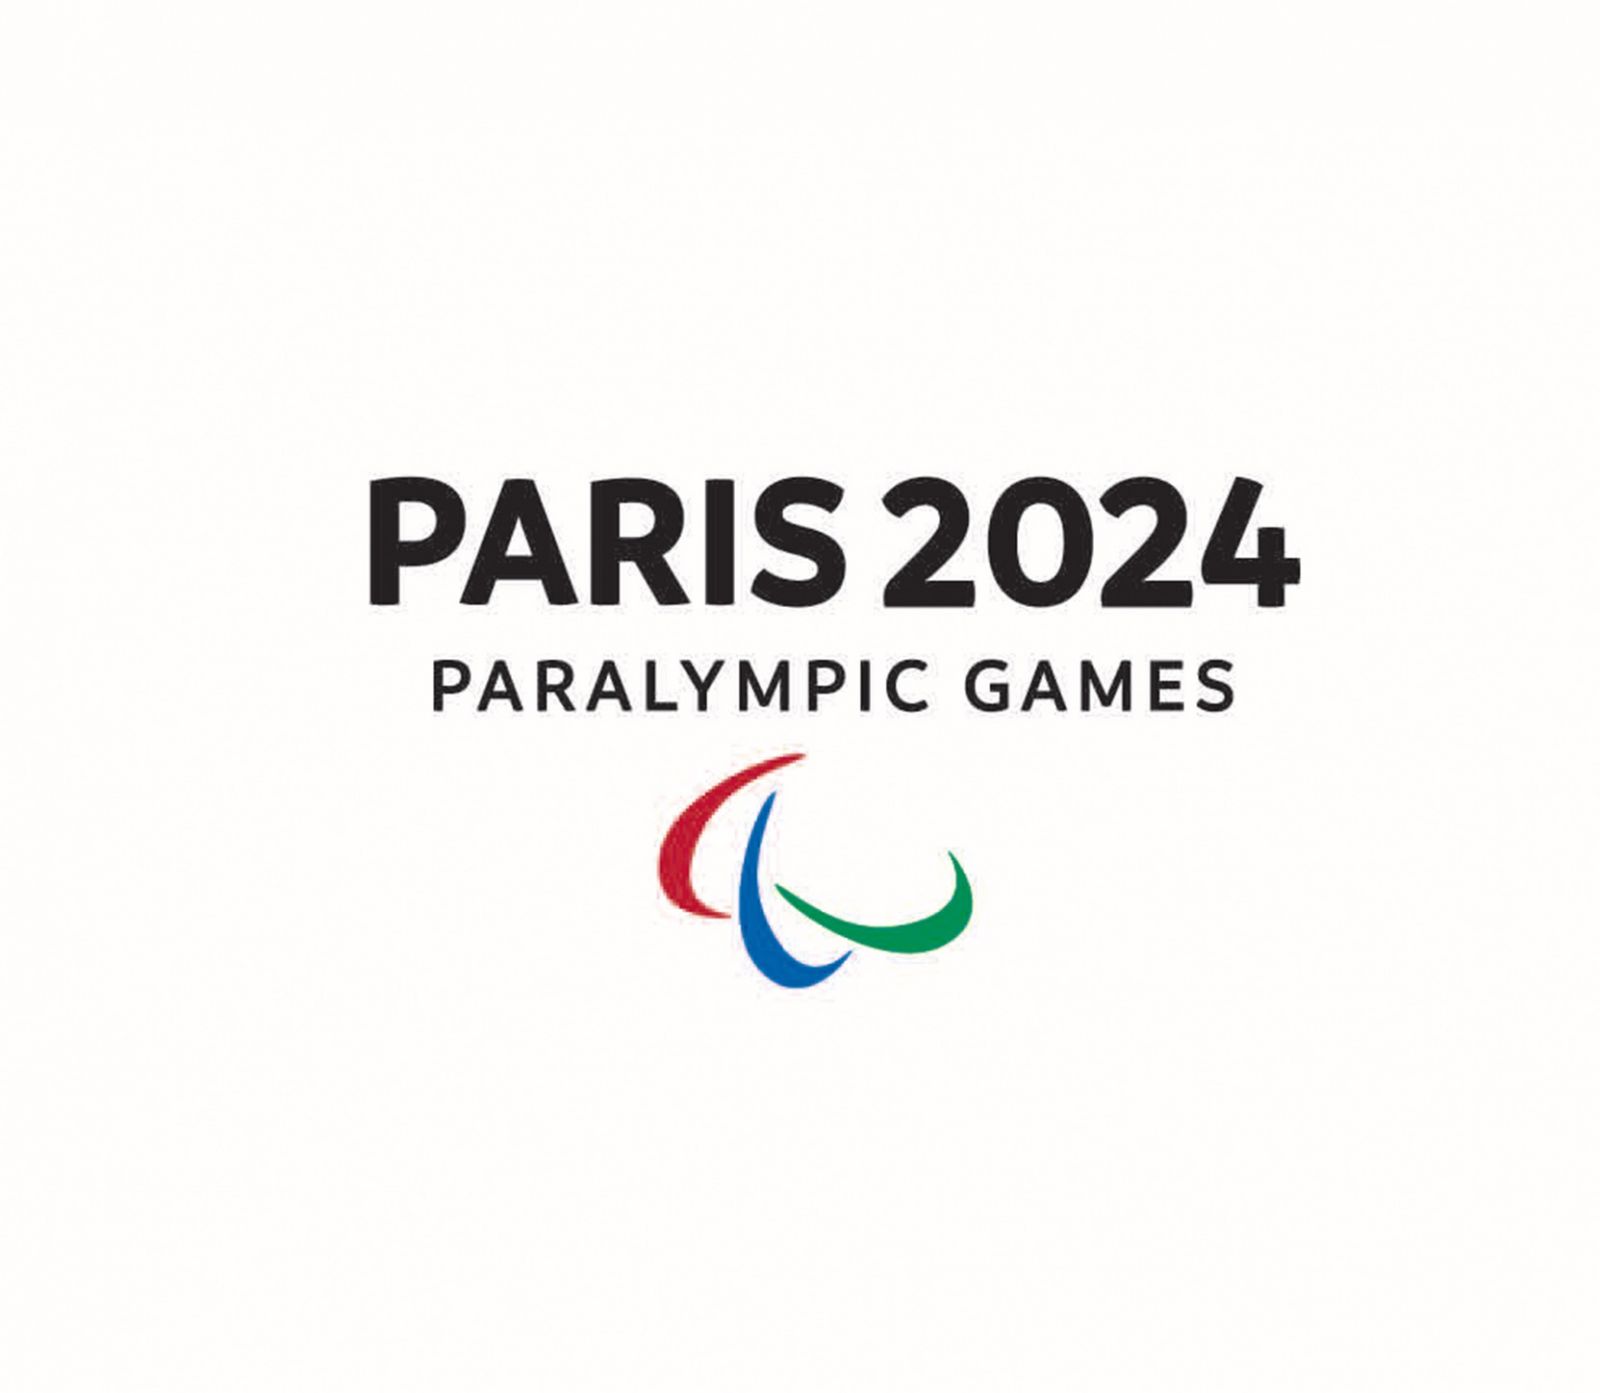 Футбол 7x7, гольф, футбол на электрических колясках и парусный спорт могут быть представлены на ПИ-2024 в Париже, по итогам заседания Исполкома МПК в Бонне